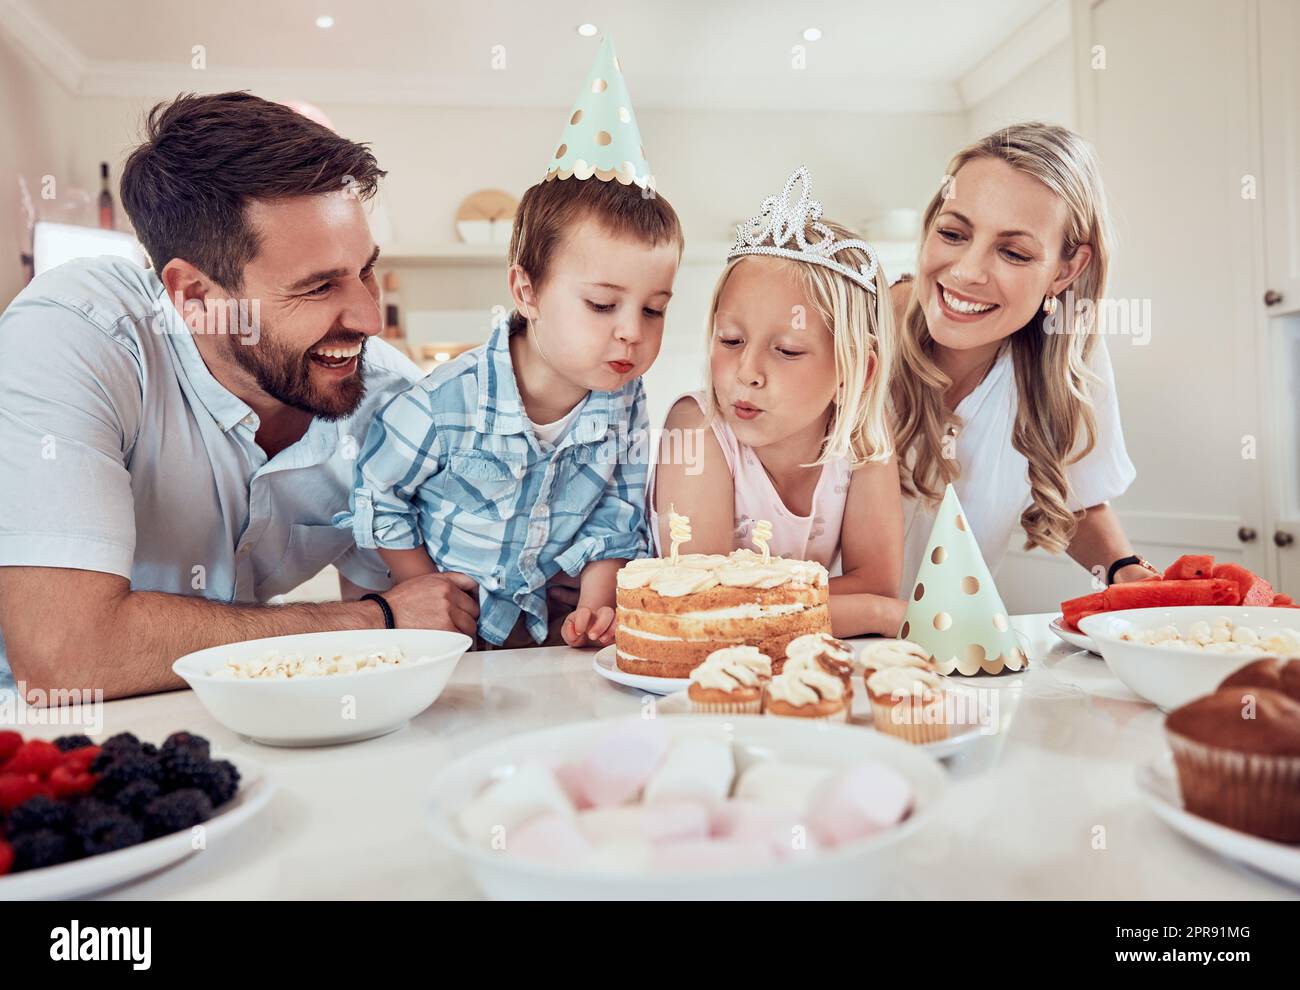 Buona famiglia che festeggia il compleanno delle figlie. Bambina che fa saltare le candele sulla sua torta di compleanno. Fratello e sorella festeggiano il loro compleanno con una festa. Famiglia caucasica alla festa di compleanno Foto Stock